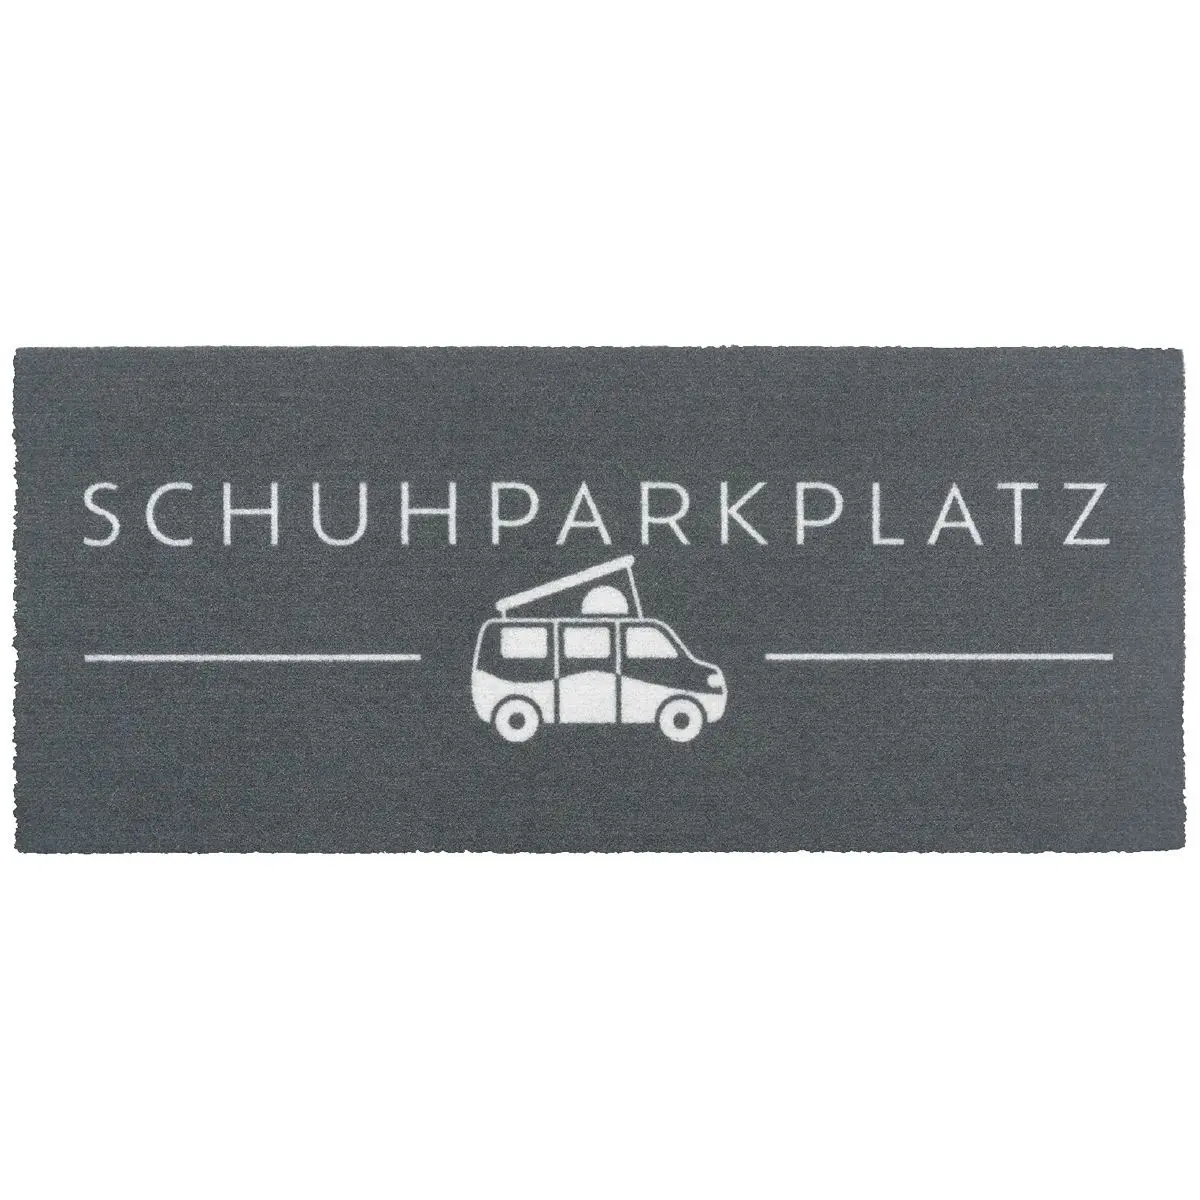 Fumatte Schuhparkplatz Camper